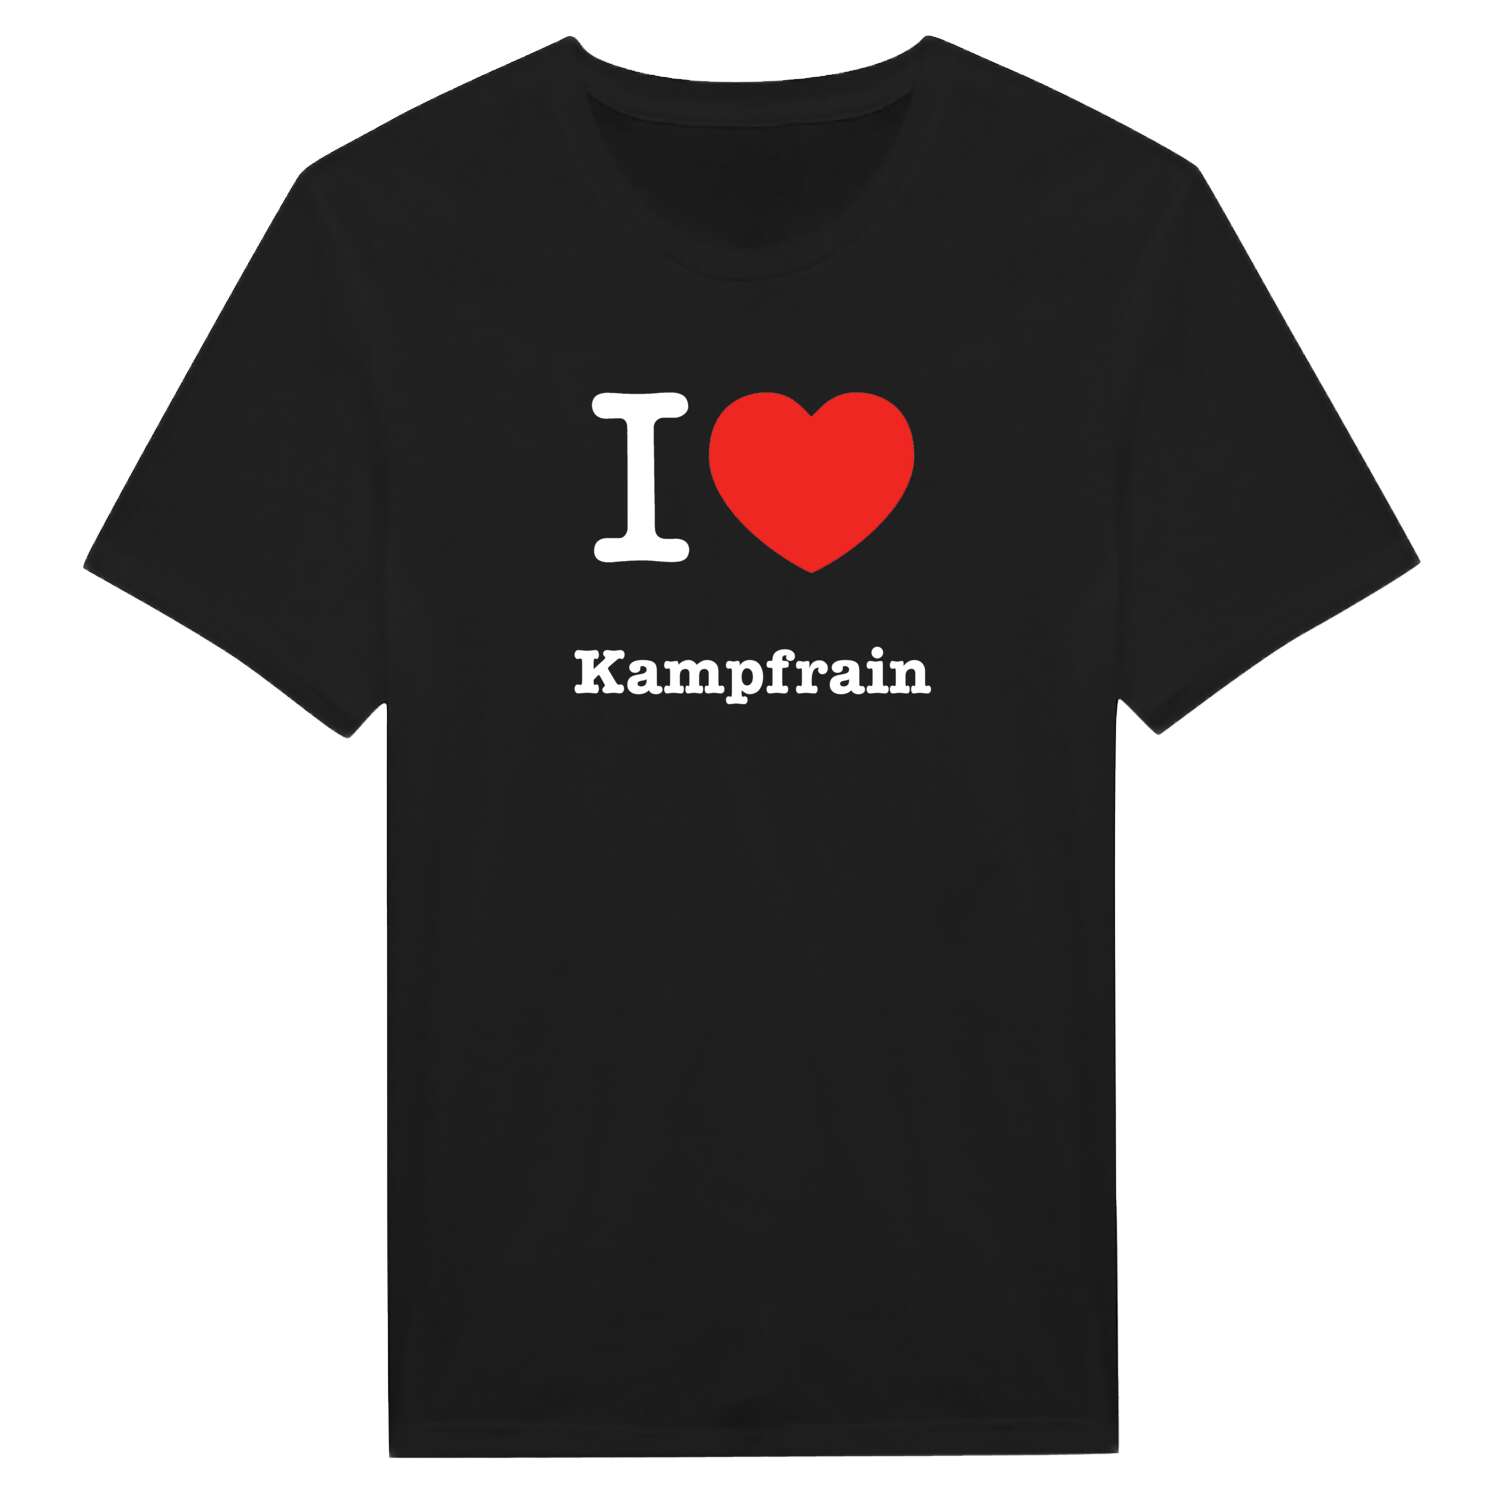 Kampfrain T-Shirt »I love«